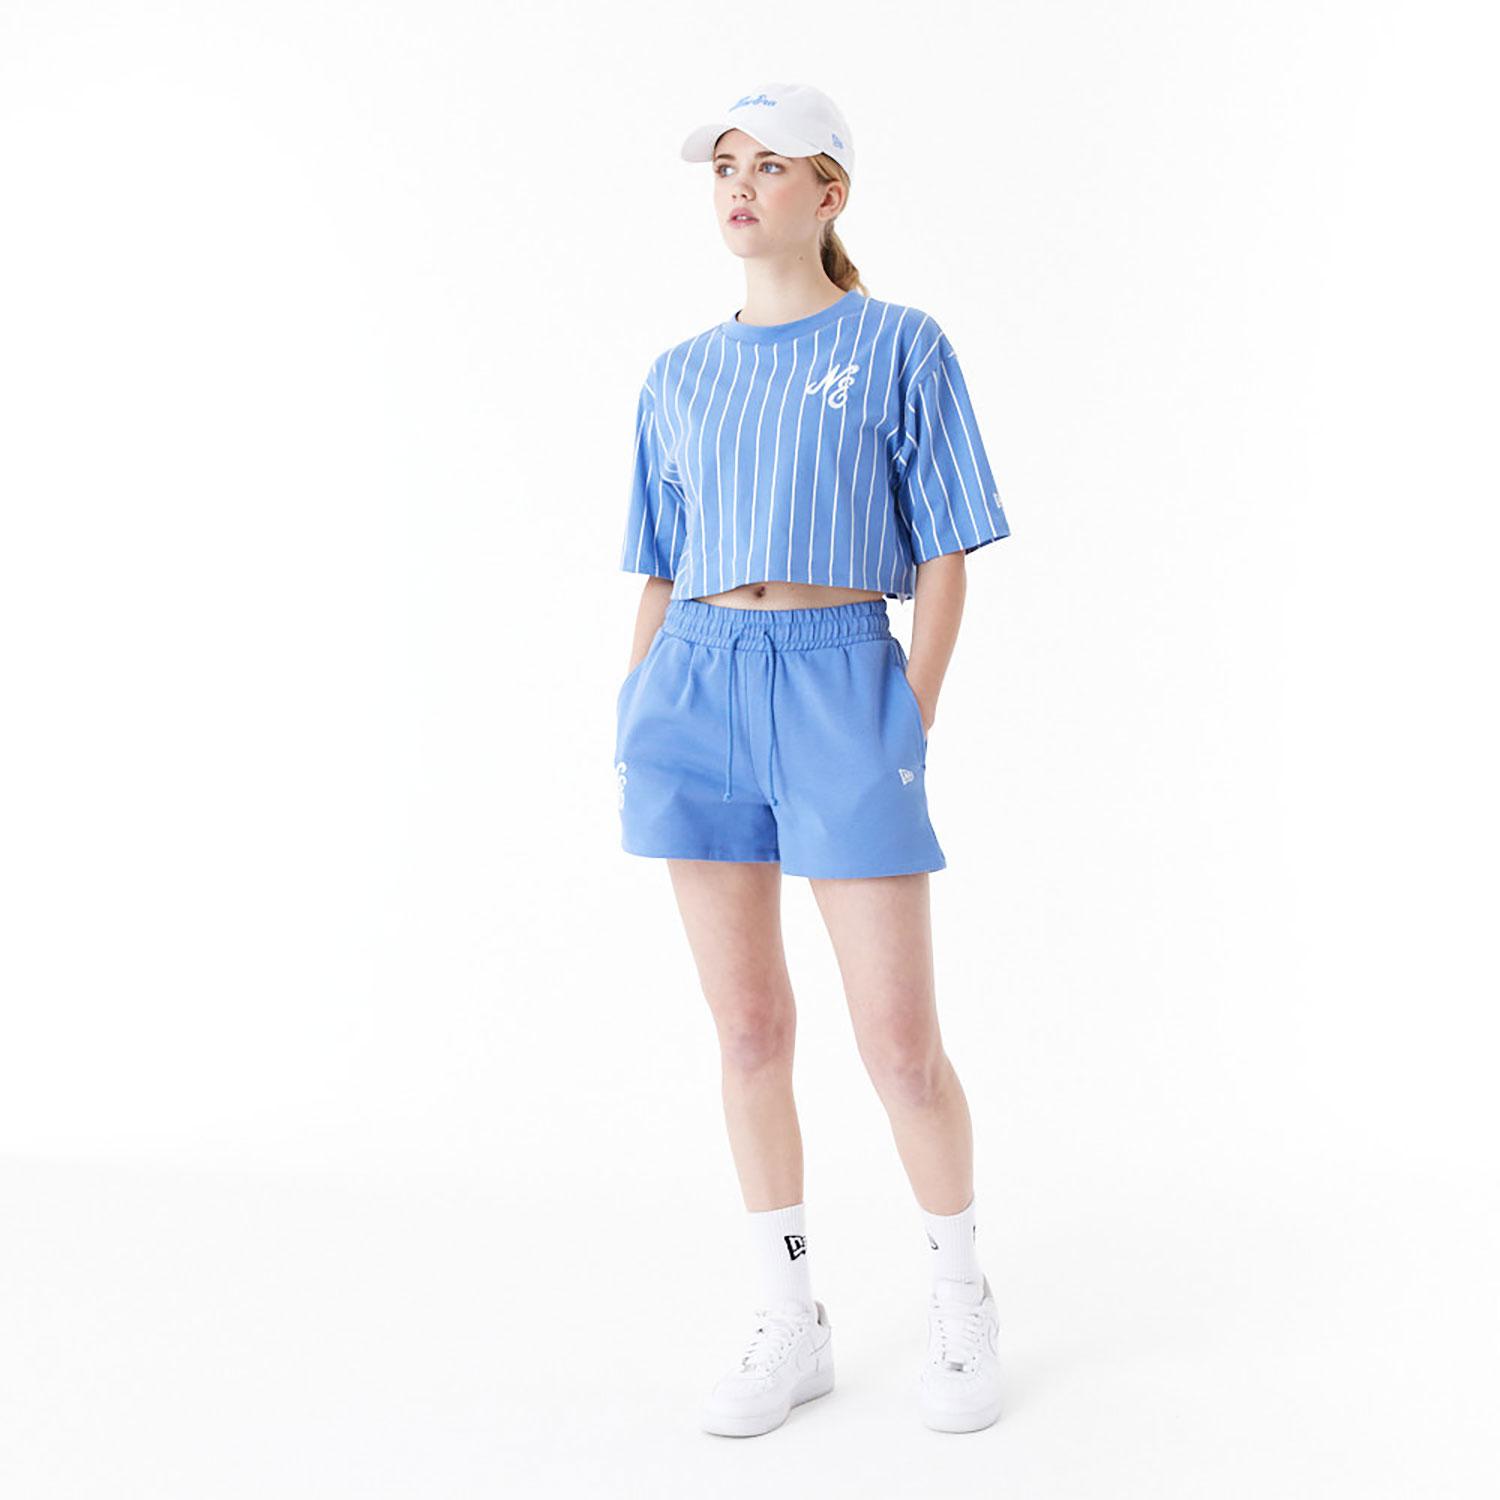 New Era Pinstripe Blue Womens Crop T-Shirt